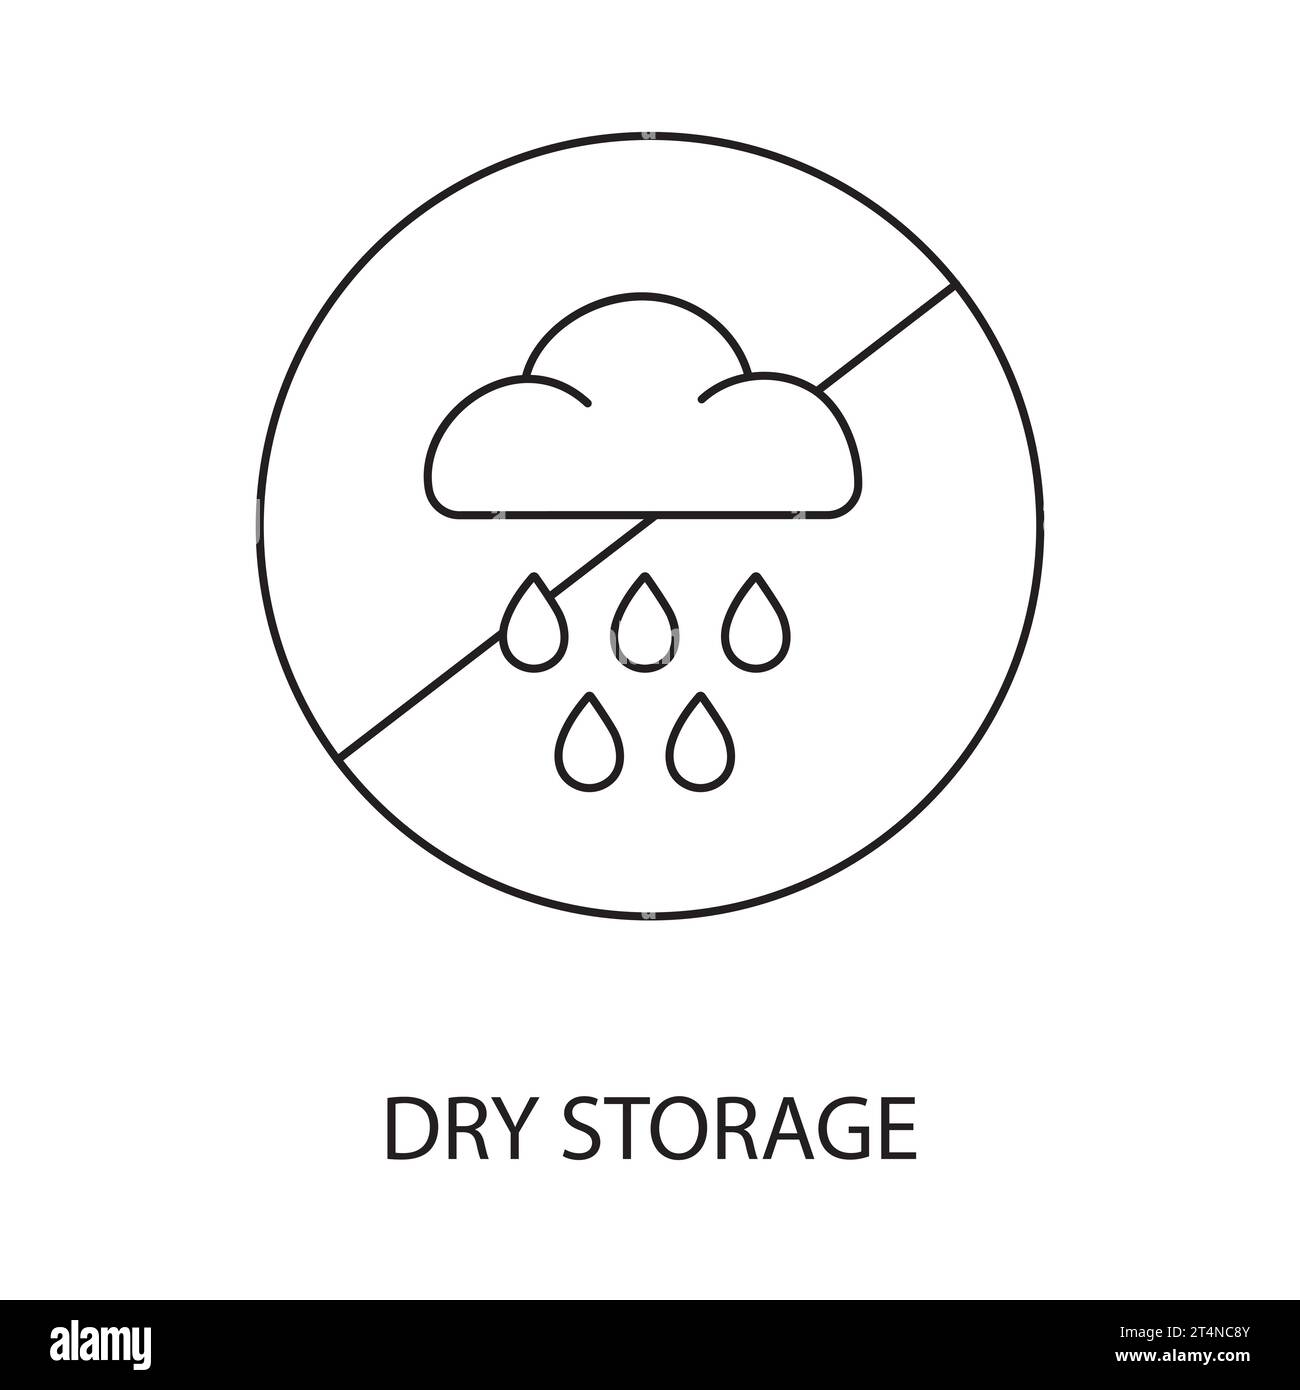 Conservazione in un luogo asciutto vettore di linea per l'imballaggio di alimenti, illustrazione di un cerchio barrato, all'interno del quale è presente una nuvola con pioggia, proteggere dall'umidità. Illustrazione Vettoriale